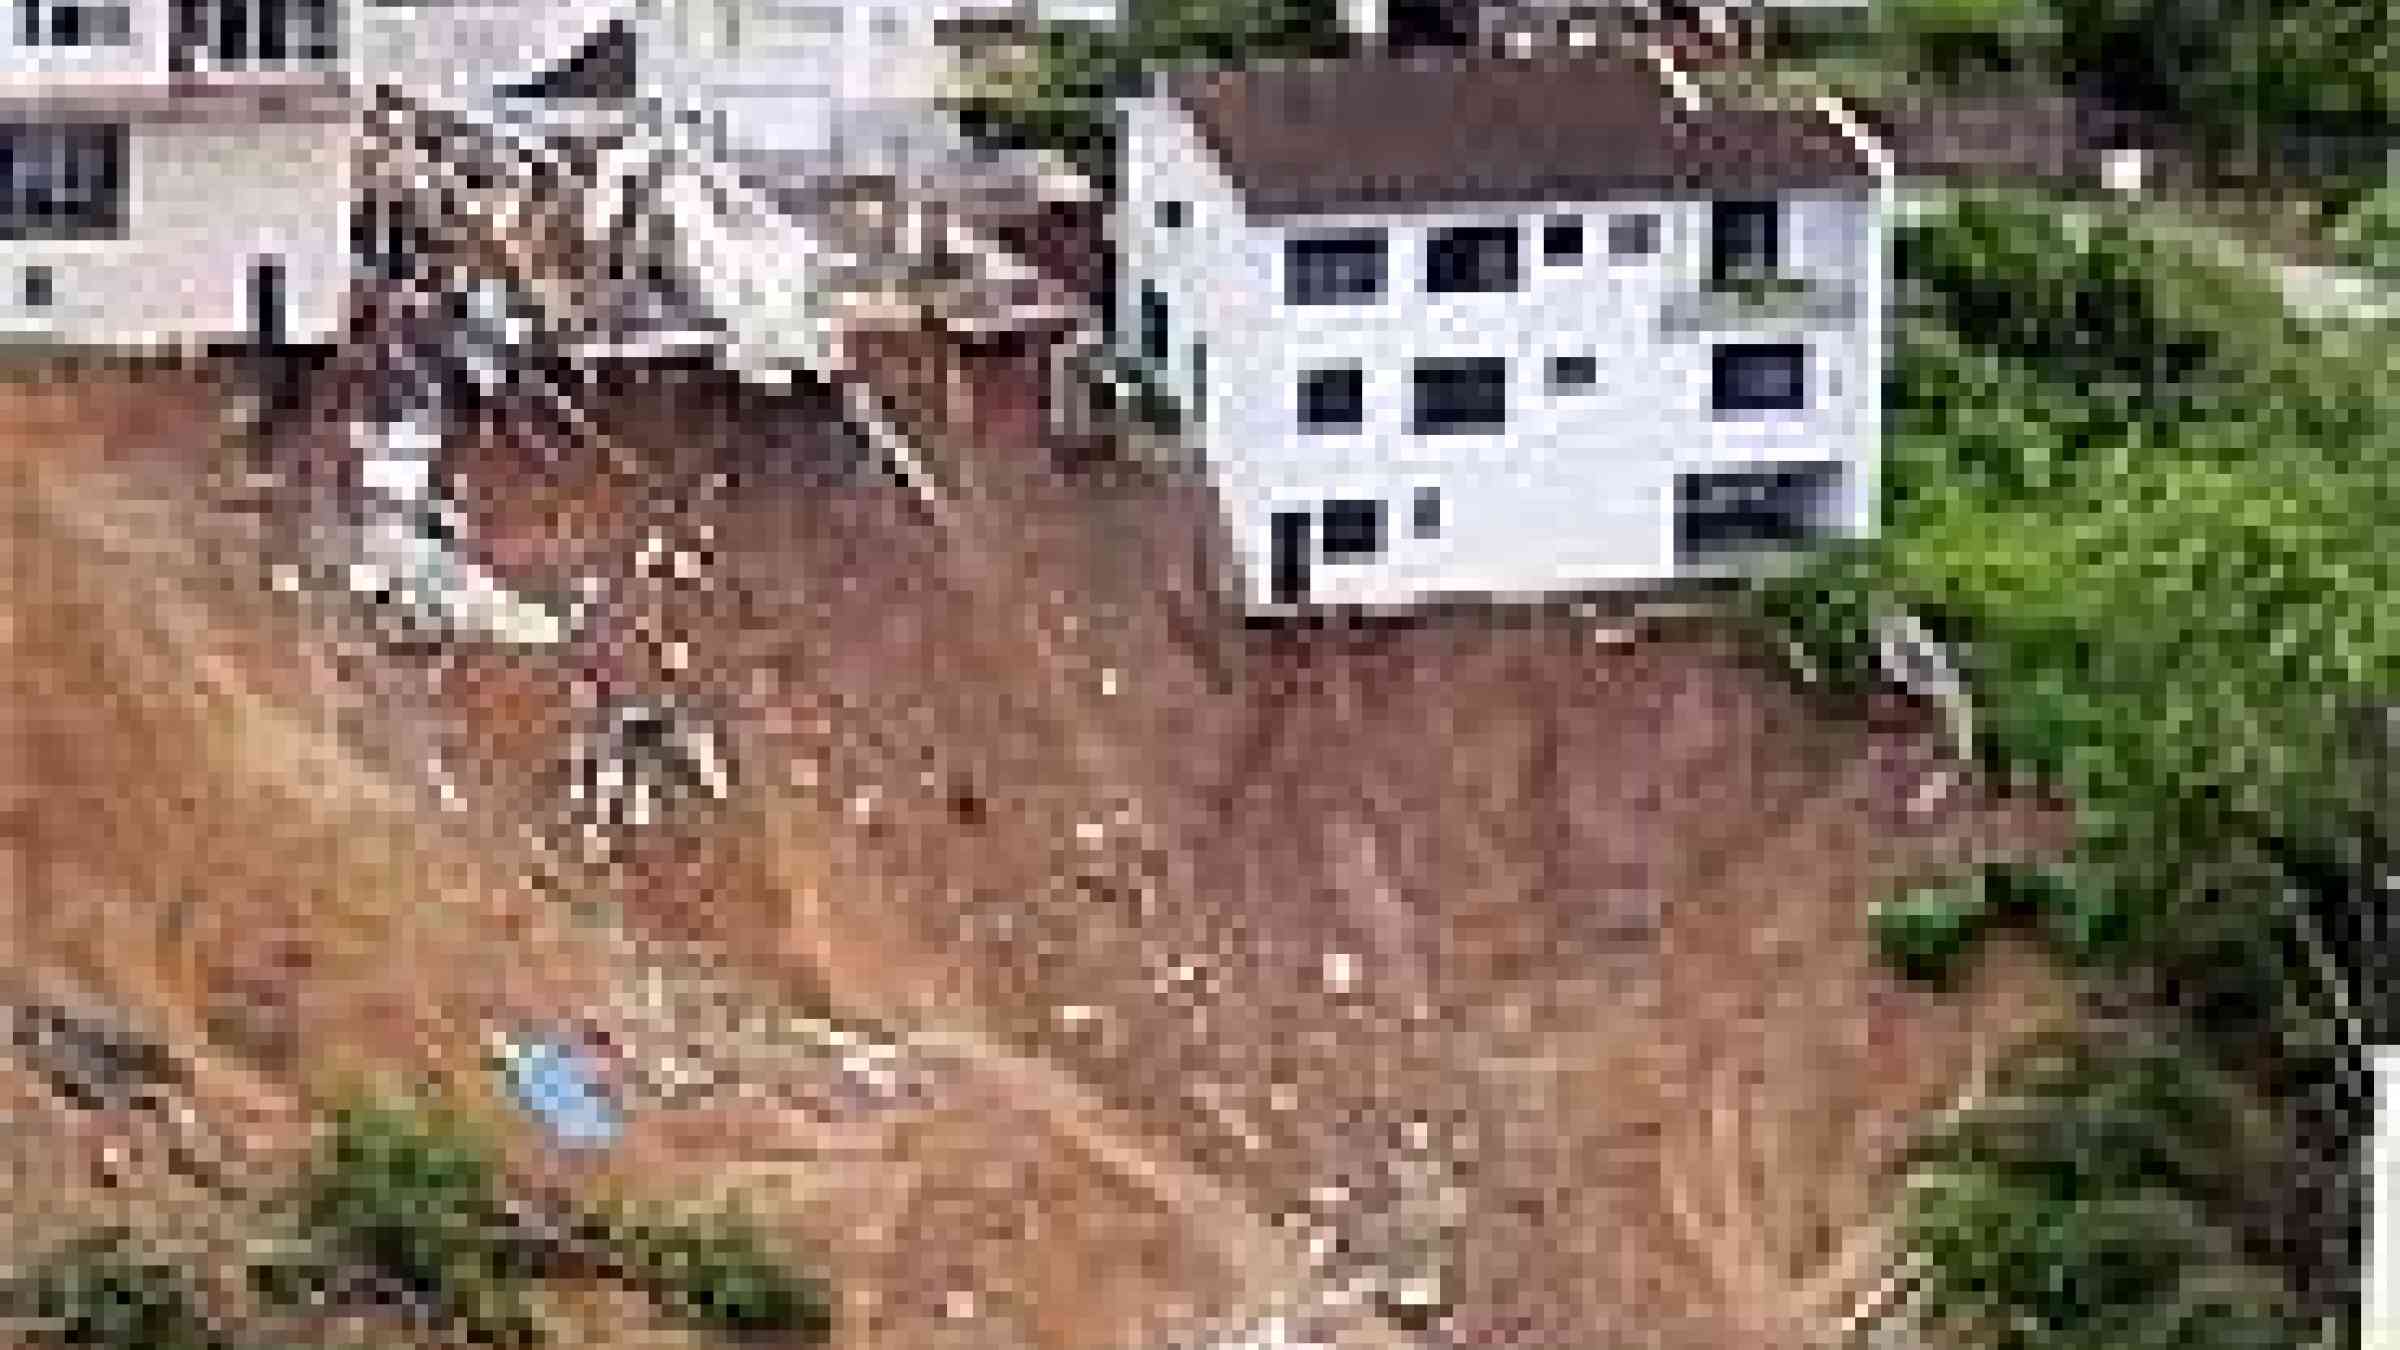 Photo source: http://daveslandslideblog.blogspot.com/2008/11/brazil-landslide-disaster-videos.html